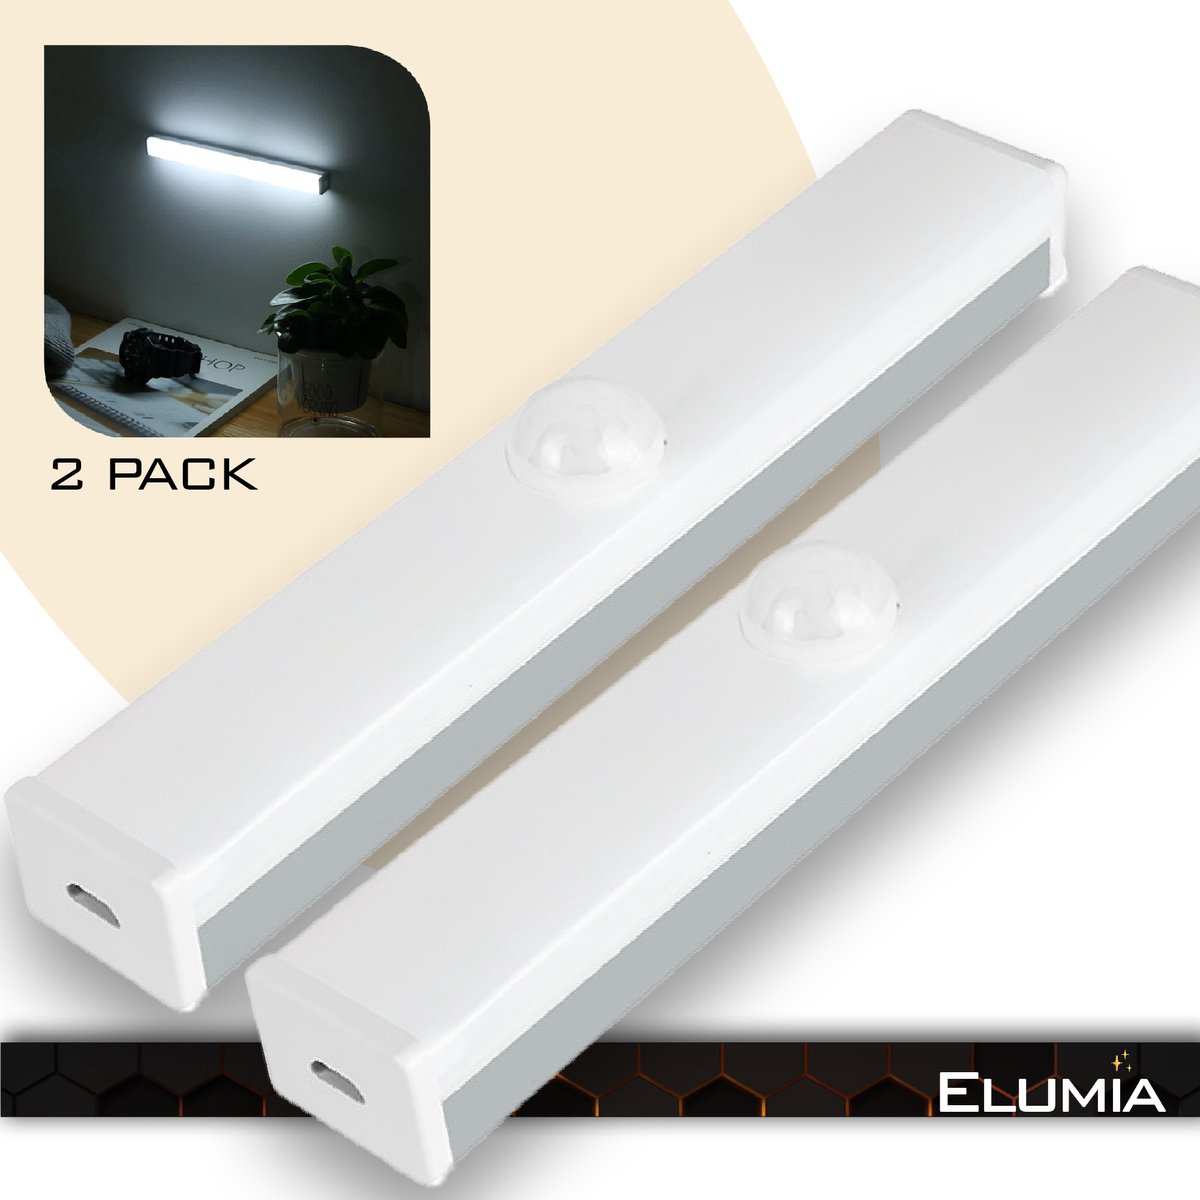 Lampe d'Armoire 50 LEDs, Rechargeable USB Sans Fil LED Lampe de